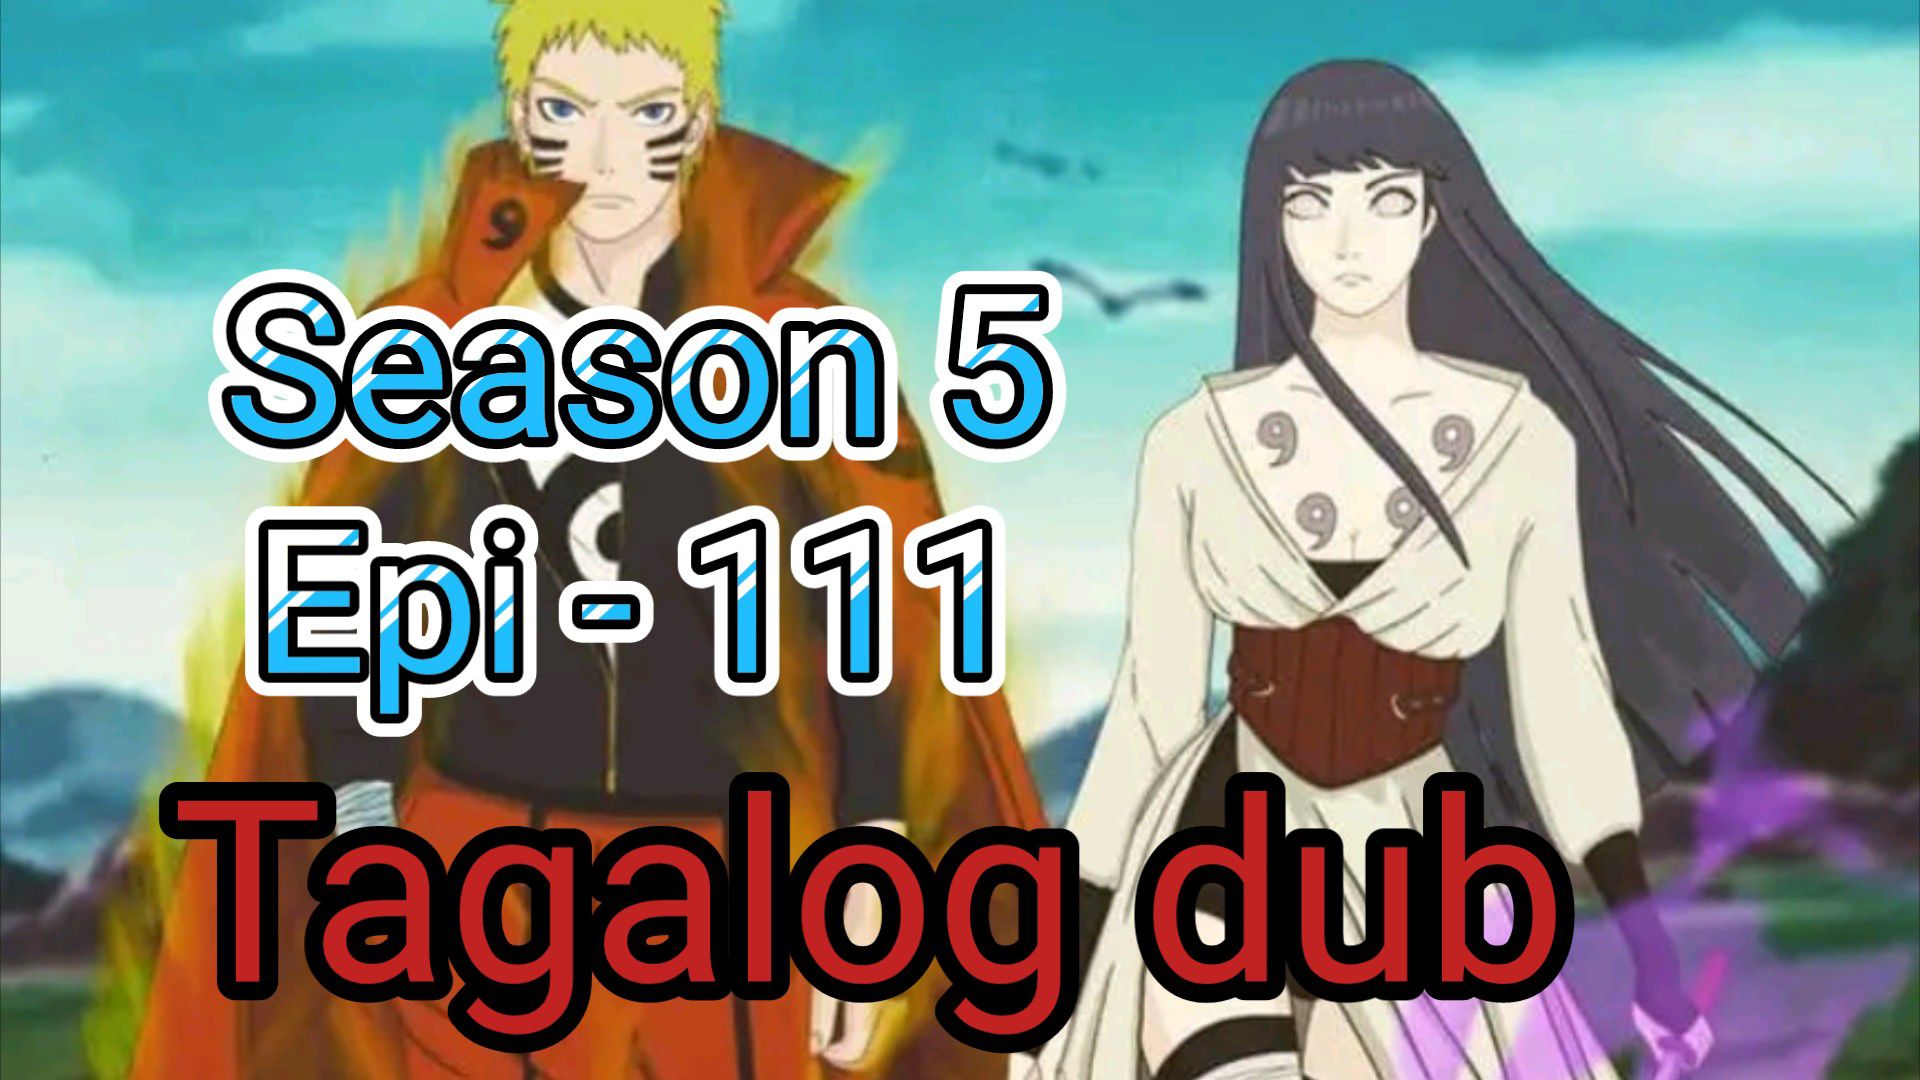 Naruto Shippuden Episode 113 Tagalog Dubbed - BiliBili